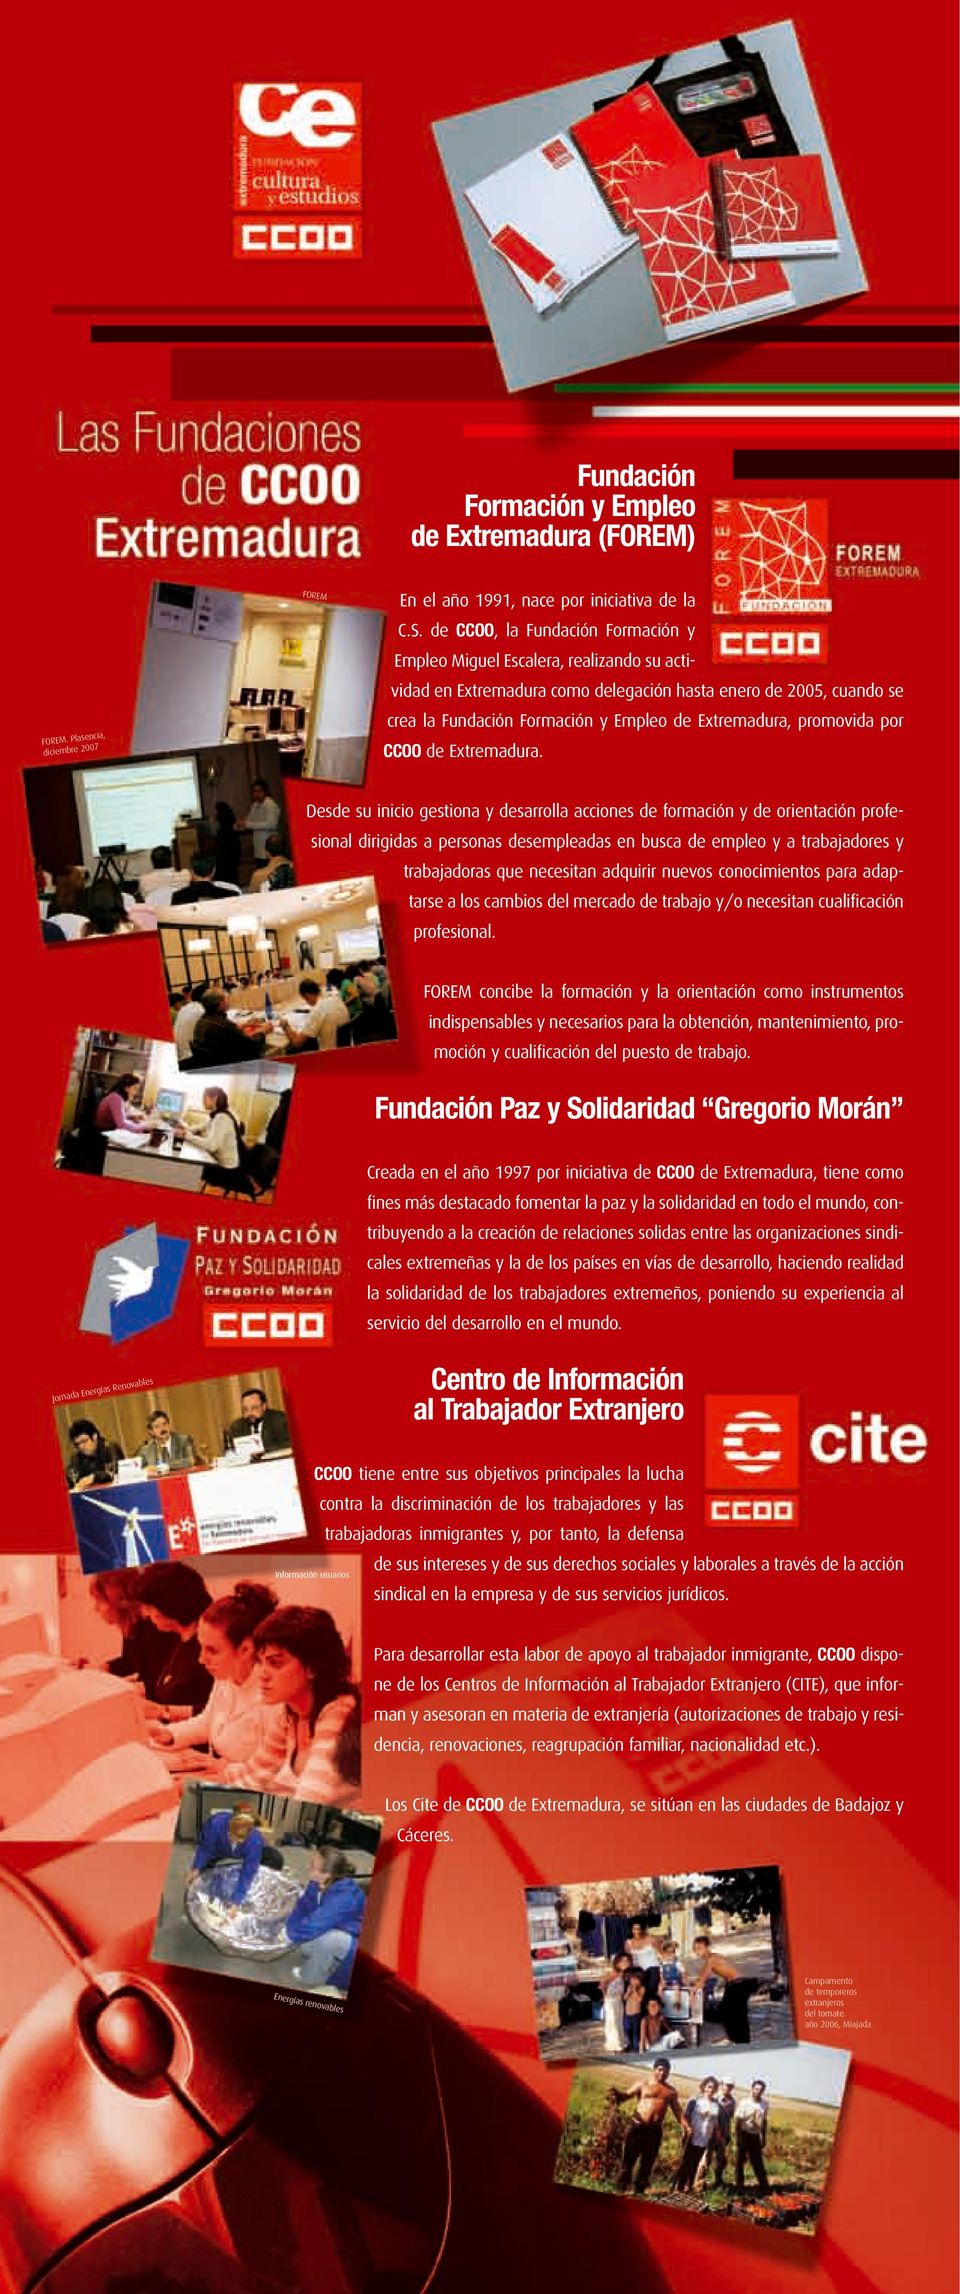 promovida por CCOO de Extremadura.